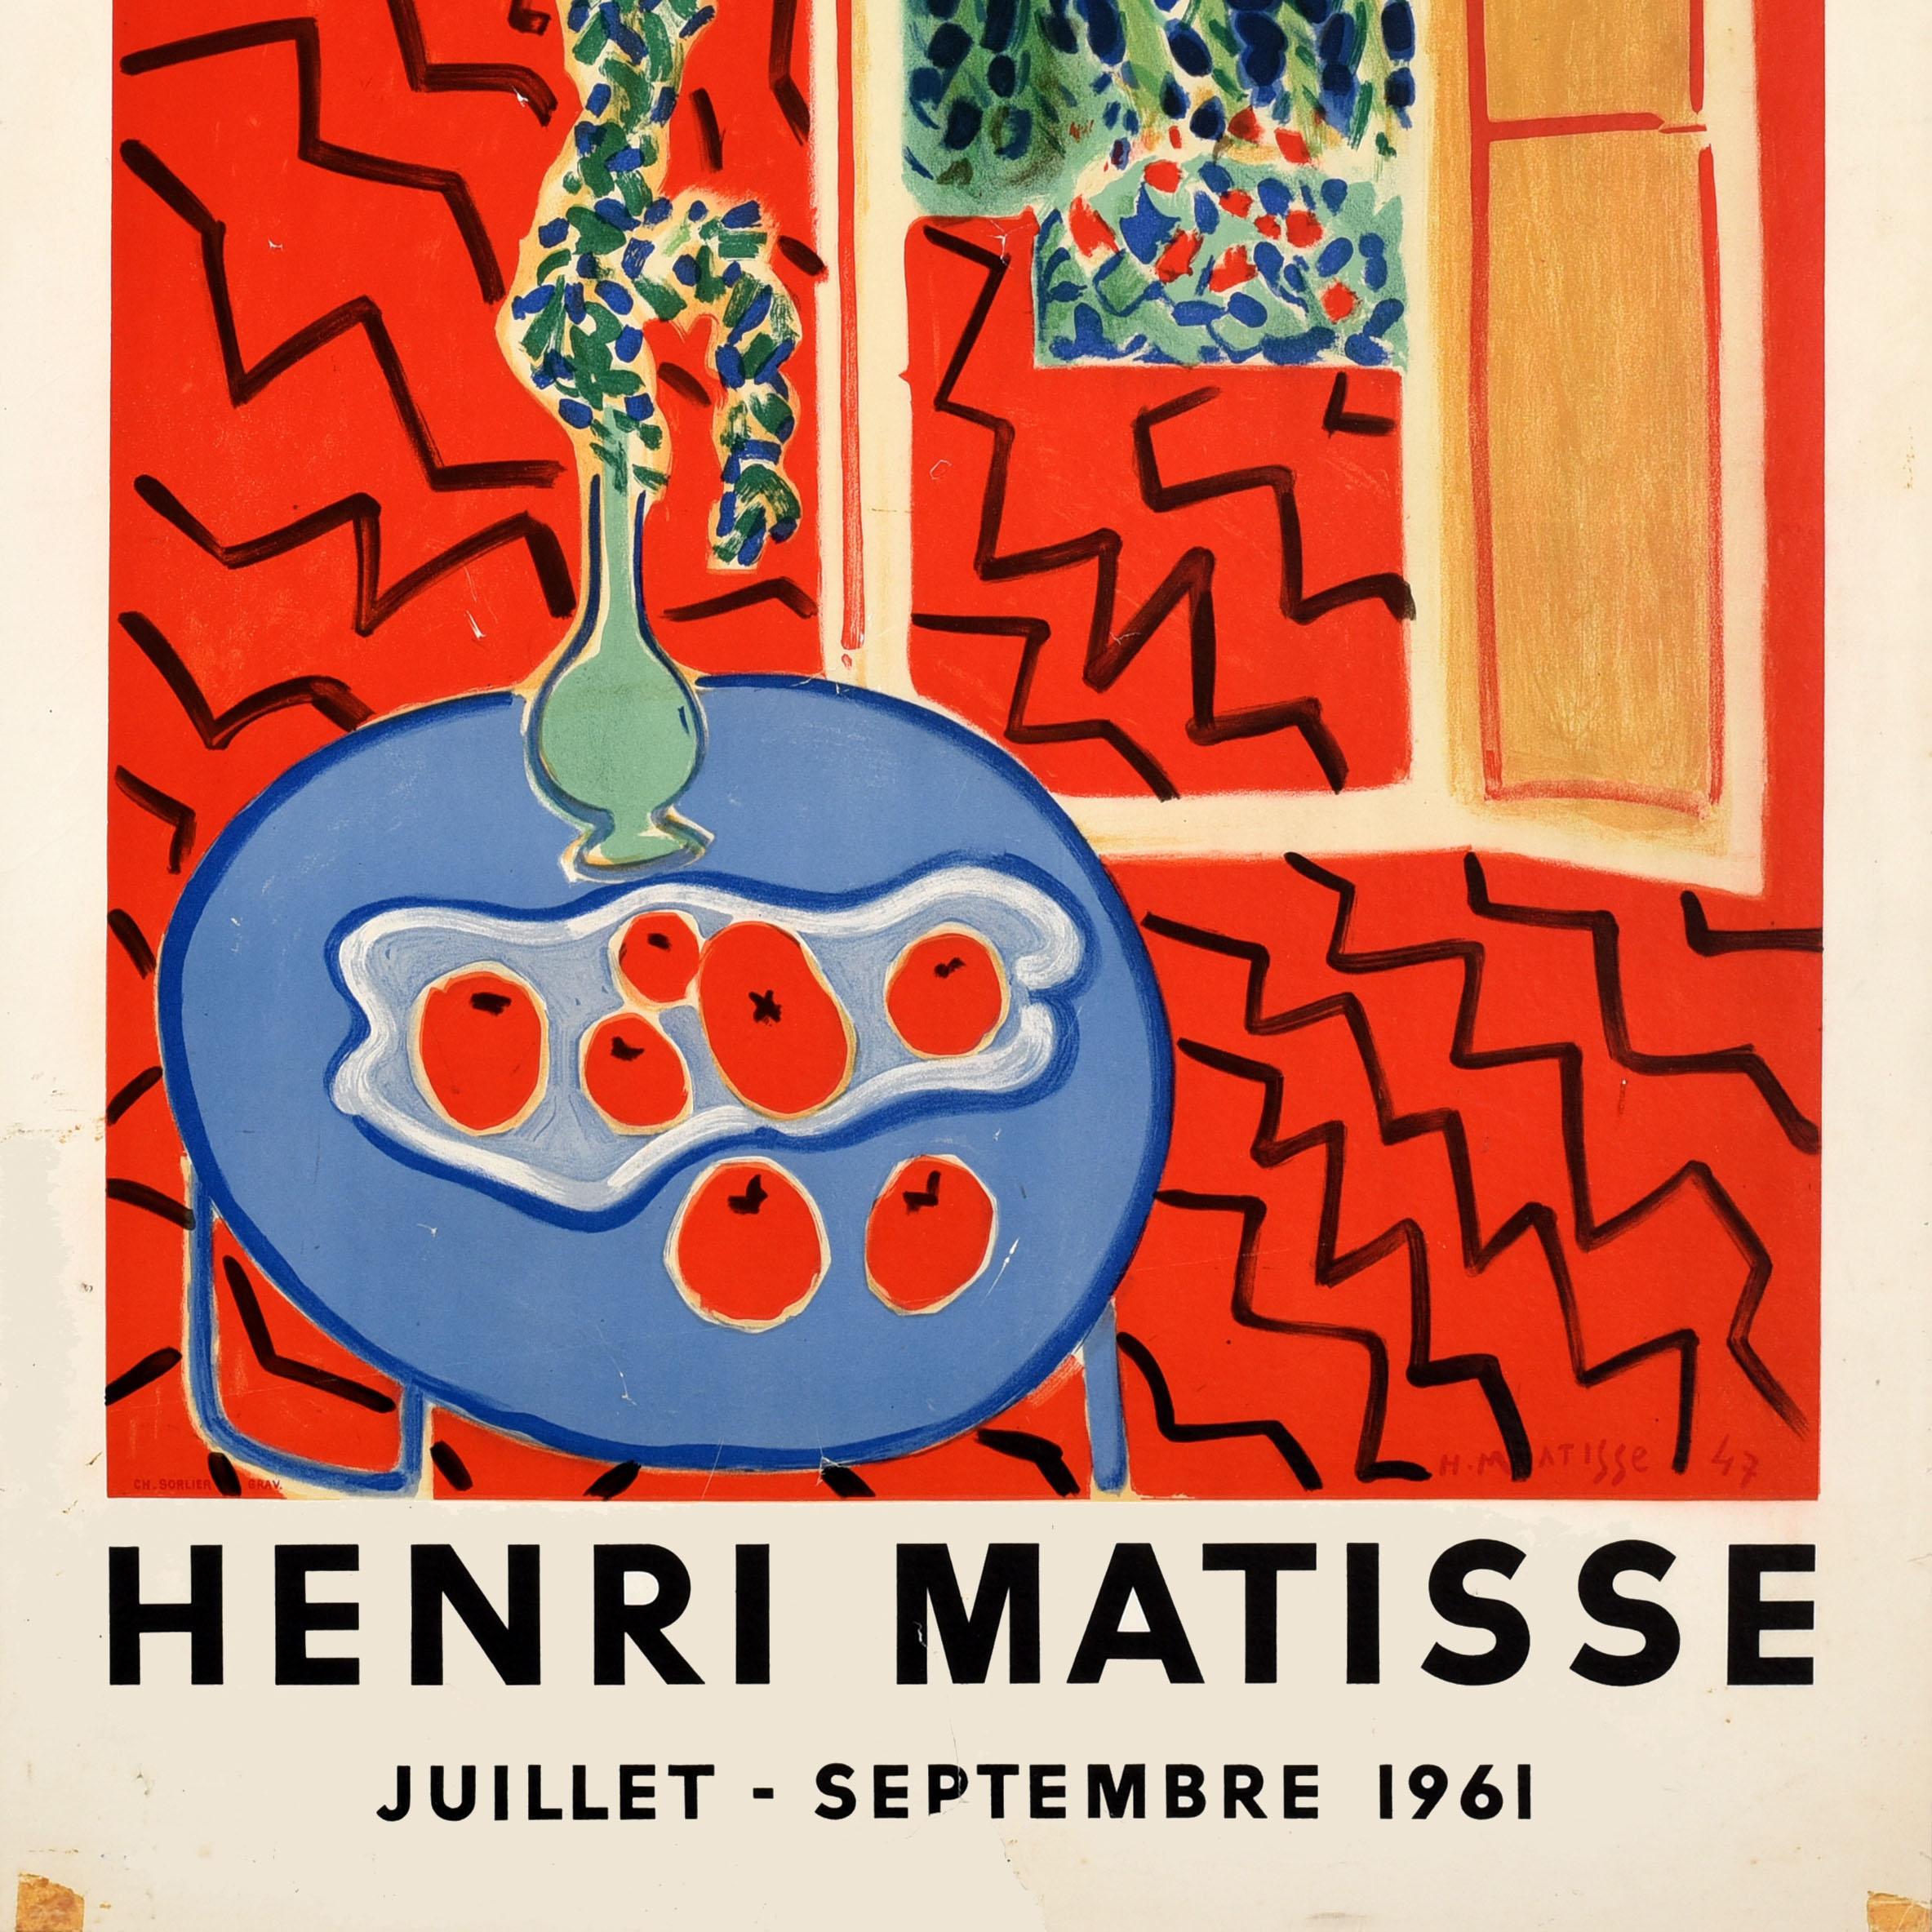 matisse exhibition poster original